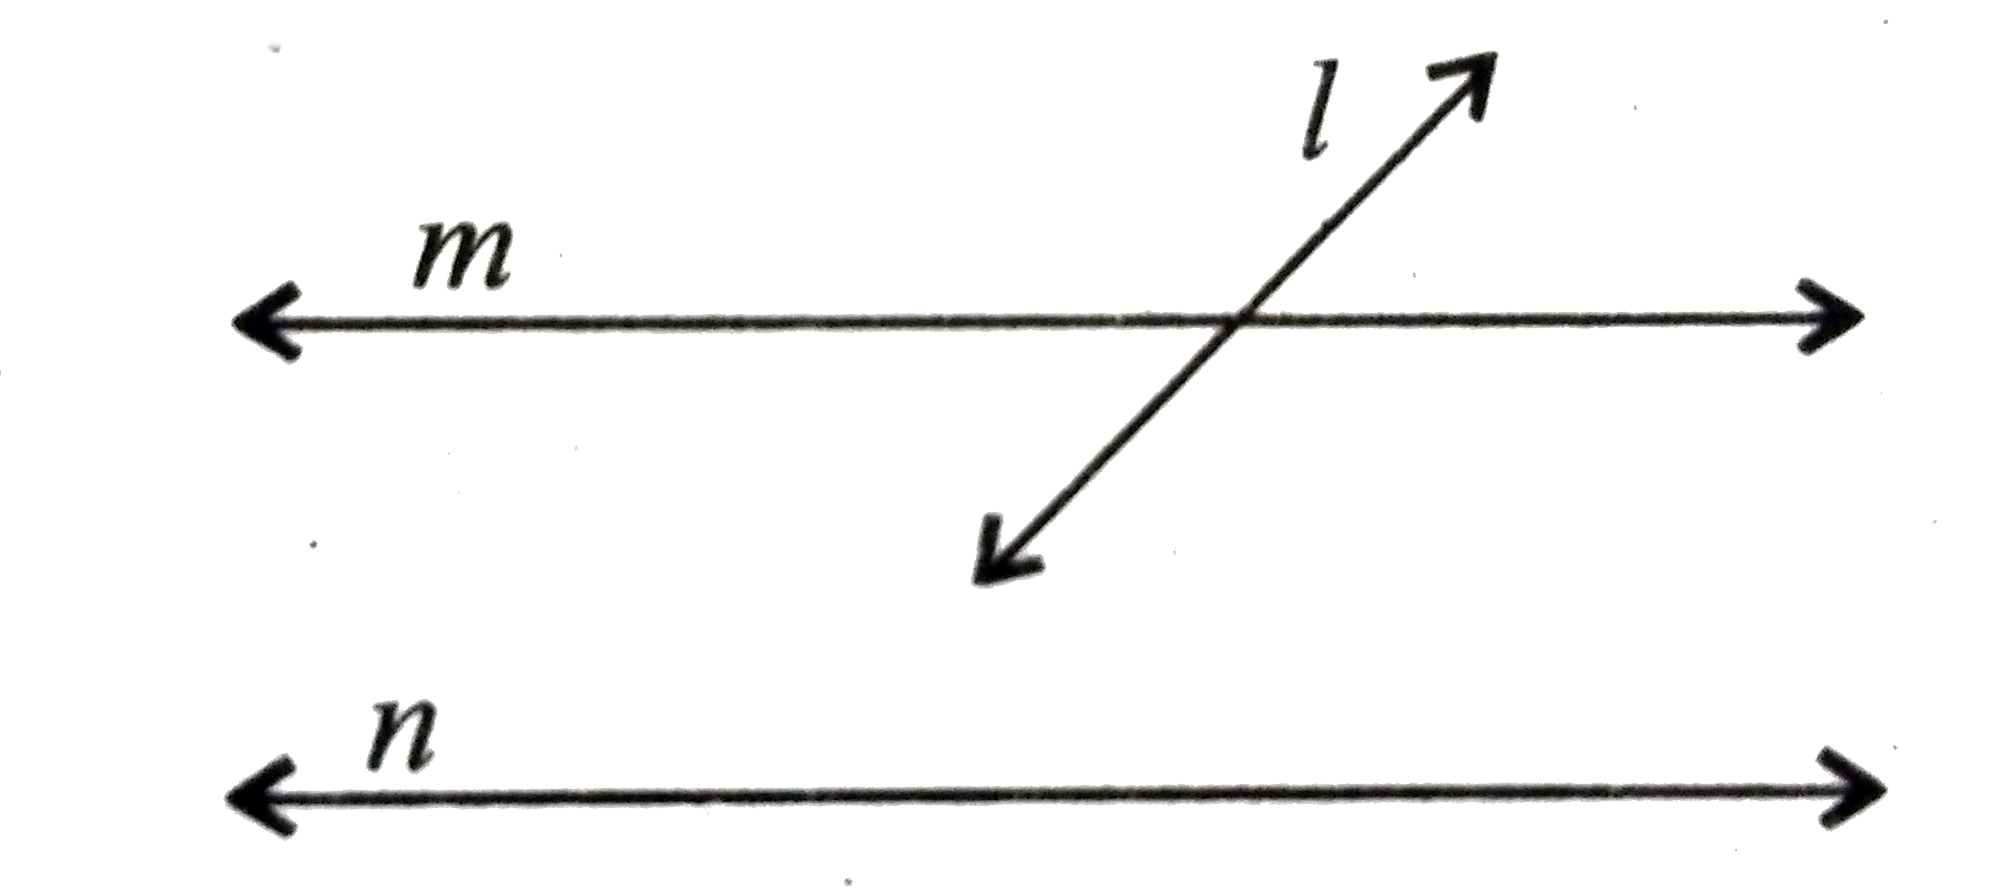 नीचे के चित्र में तीन रेखाएं l,m,n एक ही तल में है यदि l,m, को प्रतिच्छेद करें और n||m, तो दिखायें कि l और n प्रतिच्छेदी रेखाएं हैं।